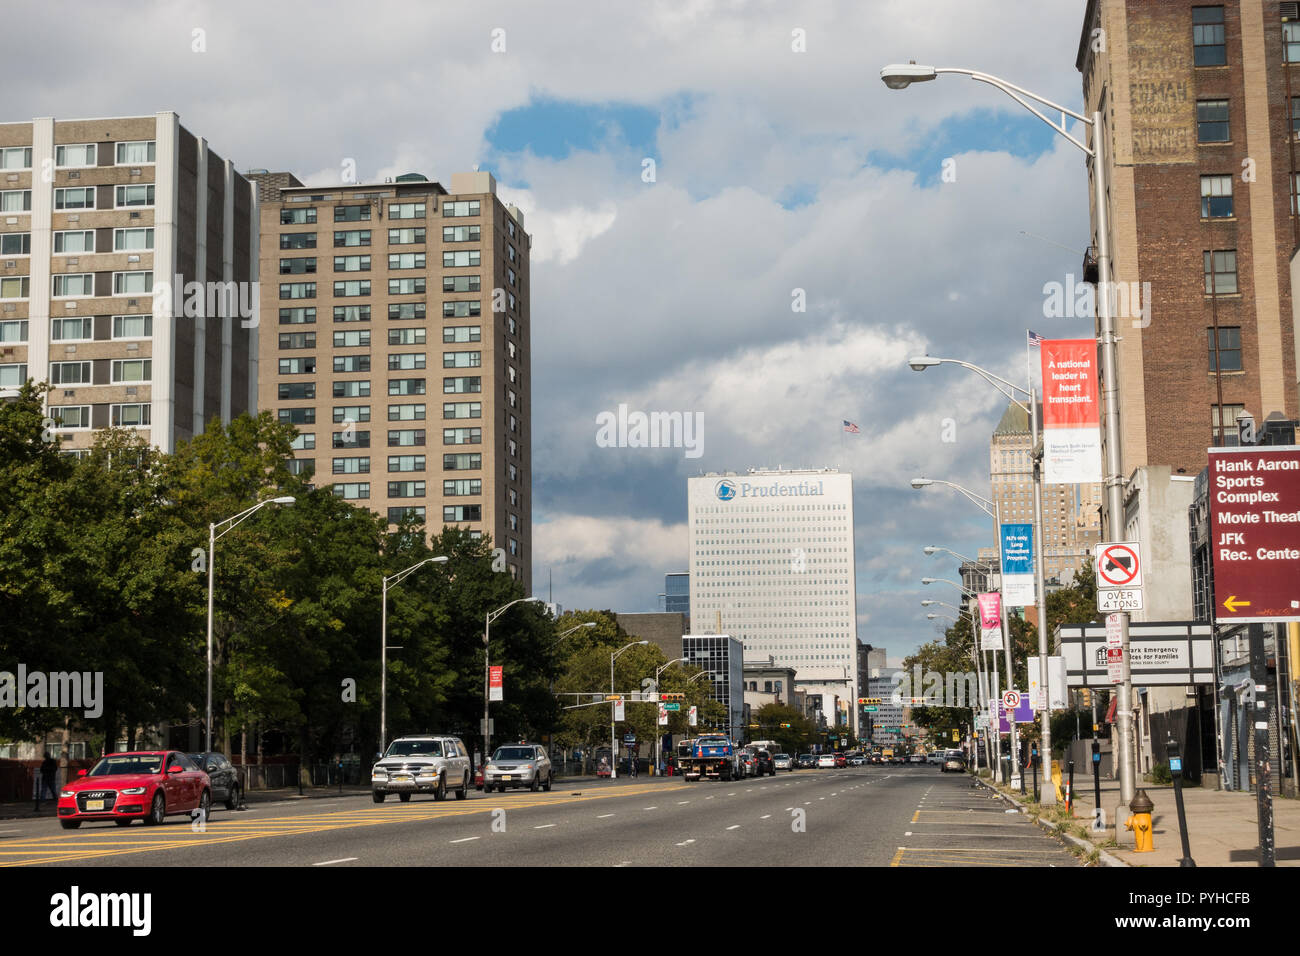 Prudential Gebäude in Newark, NJ ab Breite Straße aus gesehen Stockfoto